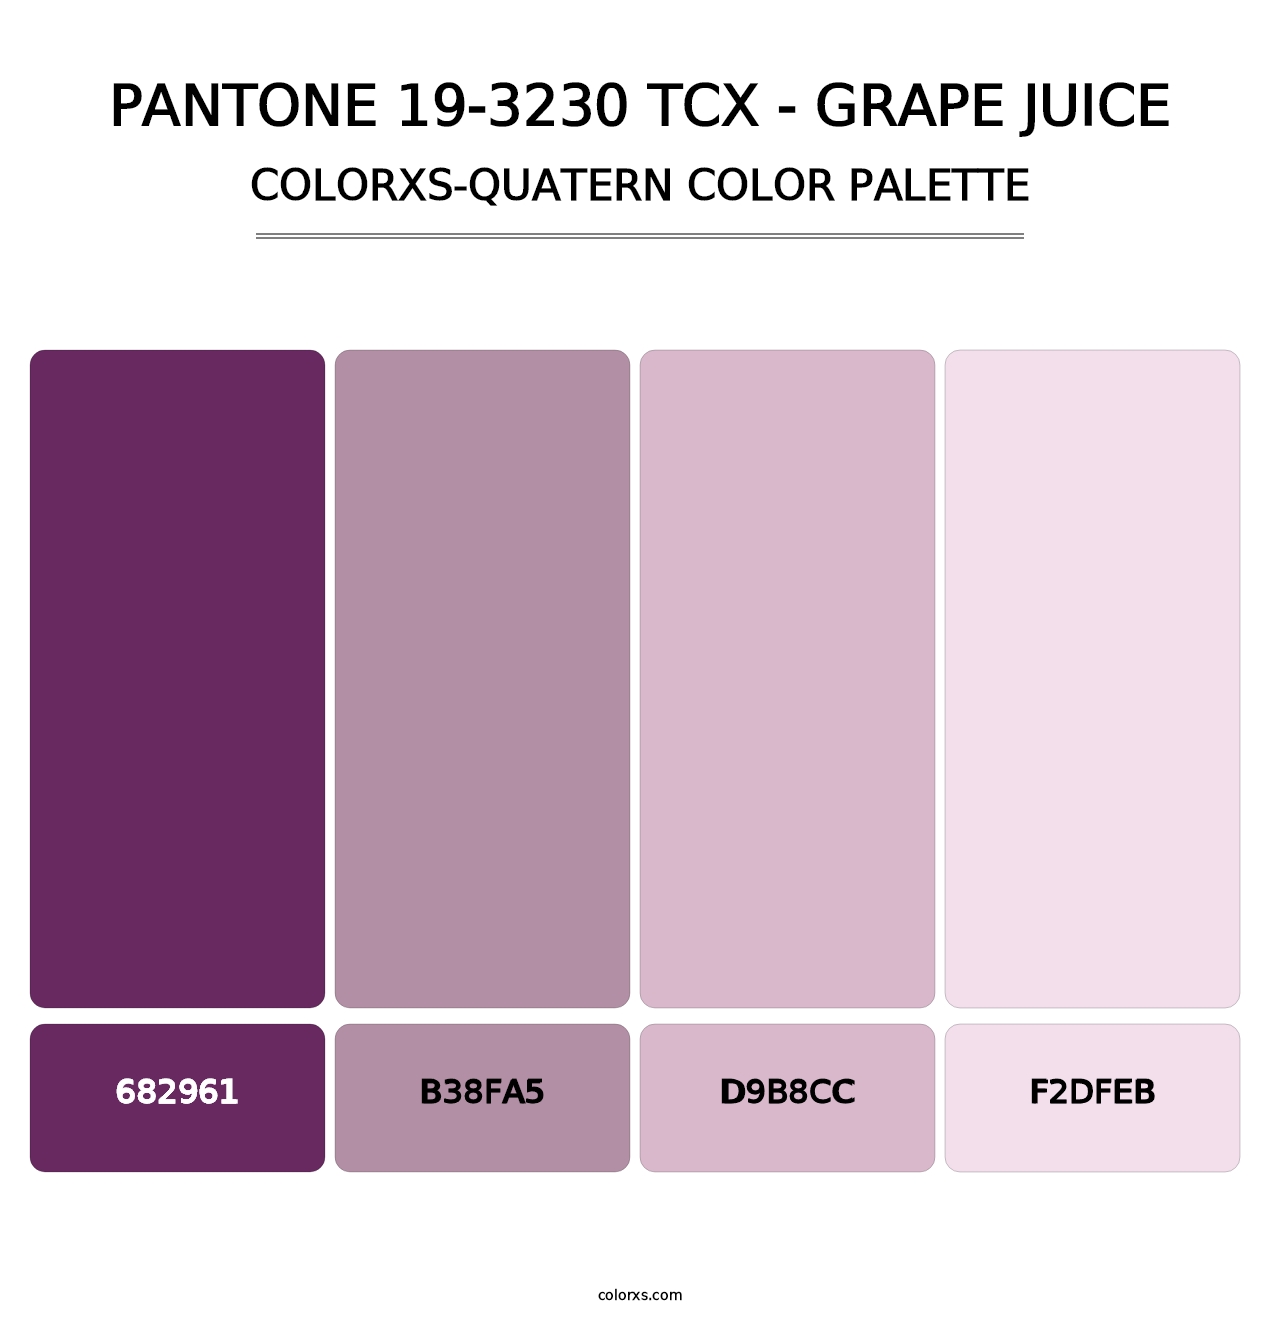 PANTONE 19-3230 TCX - Grape Juice - Colorxs Quatern Palette